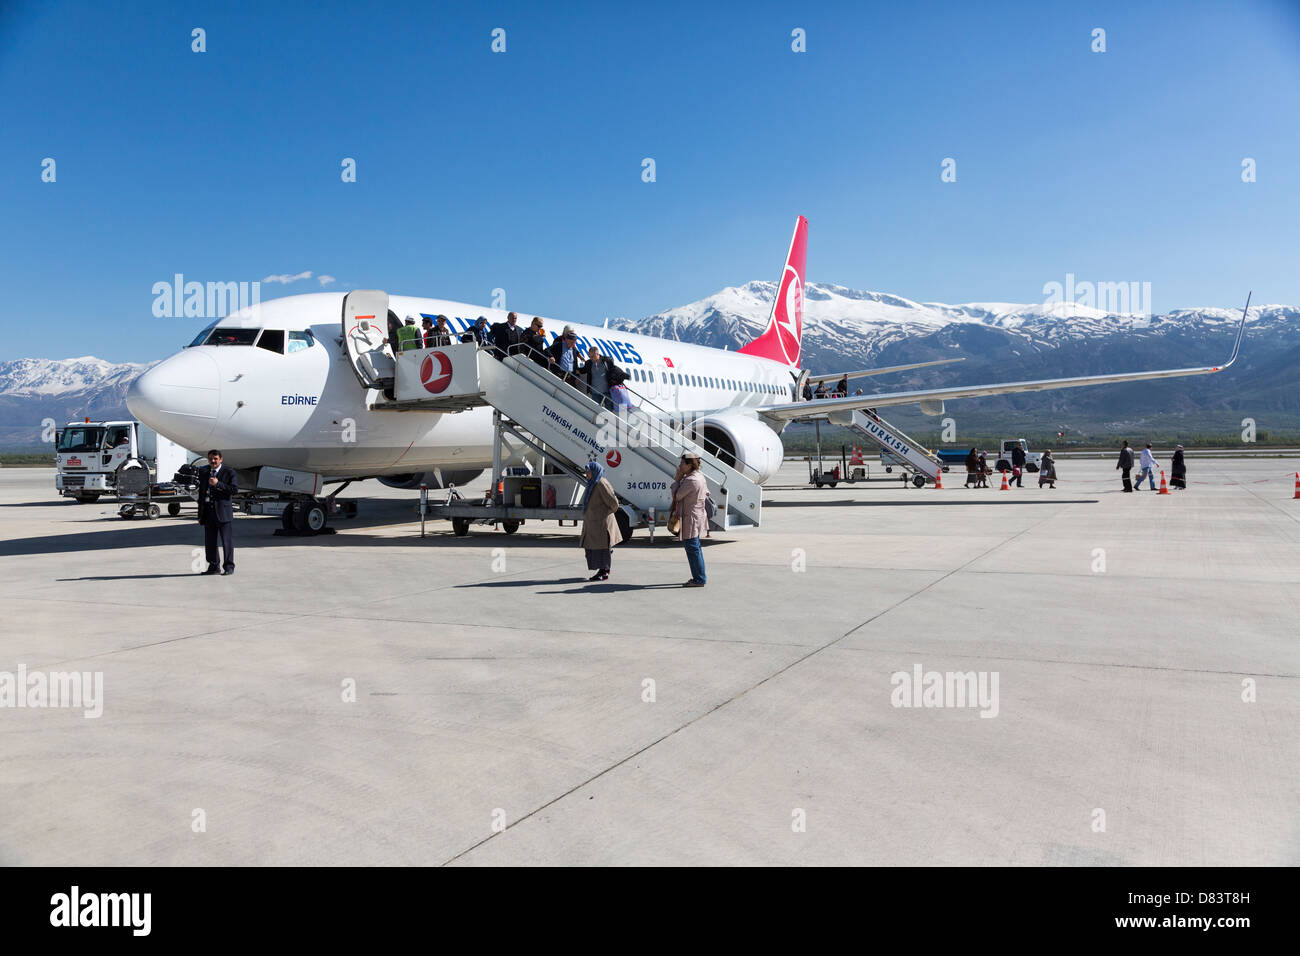 passengers disembarking from Turkish Airlines plane Erzincan Airport, Anatoila, Turkey Stock Photo